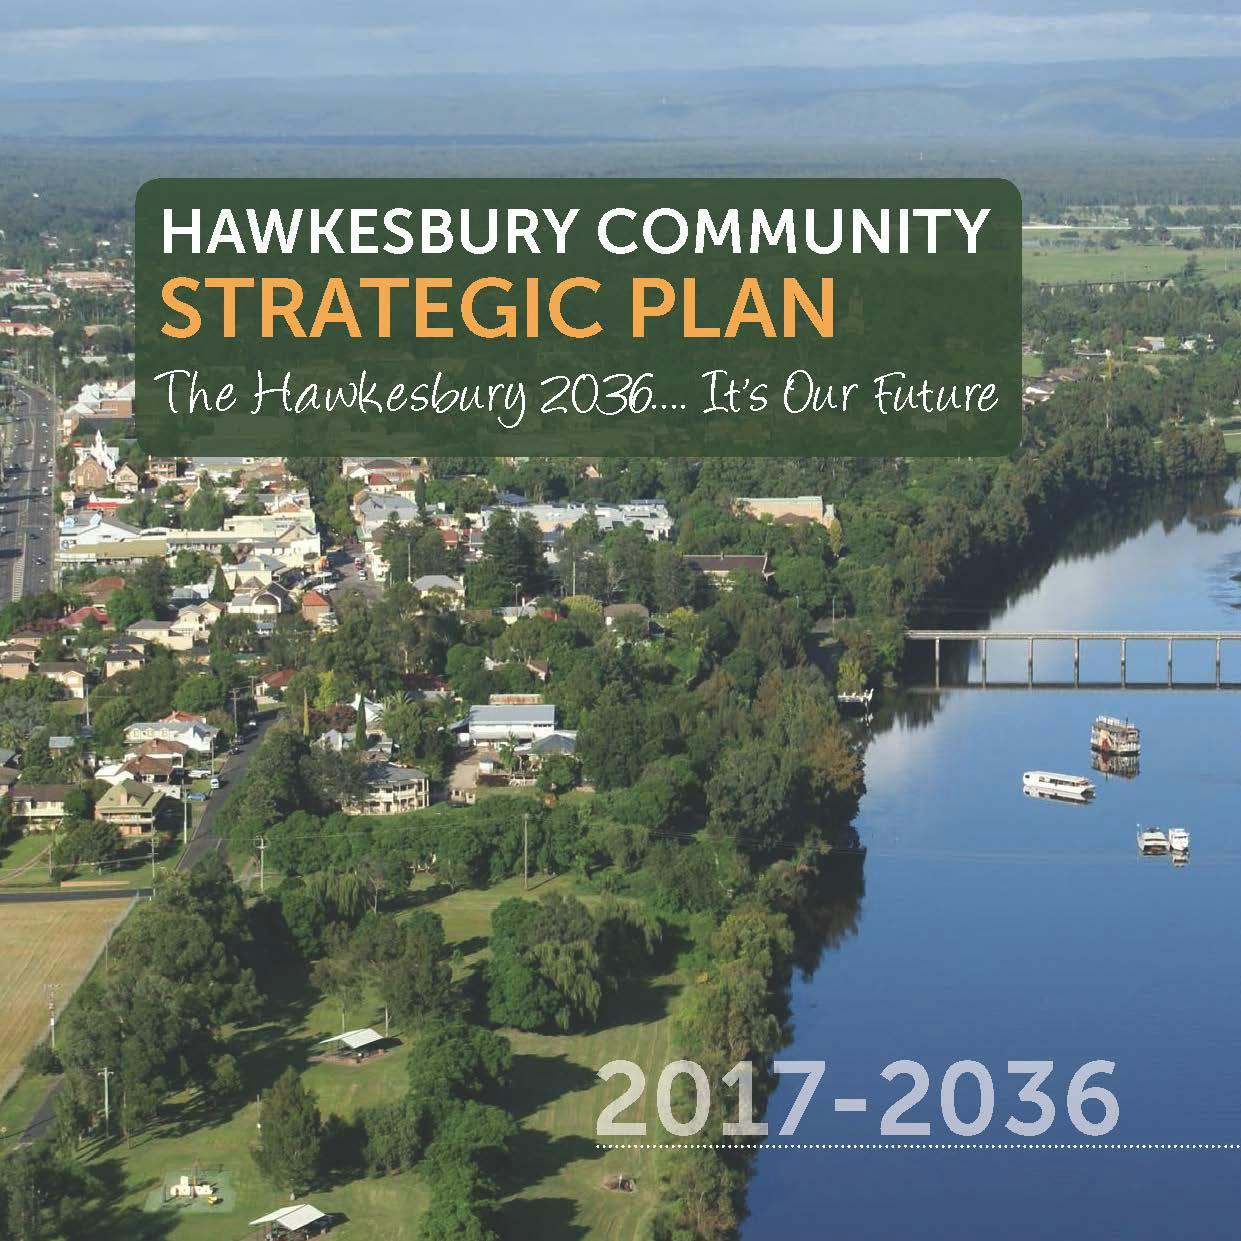 Hawkesbury Community Strategic Plan 2017-2036